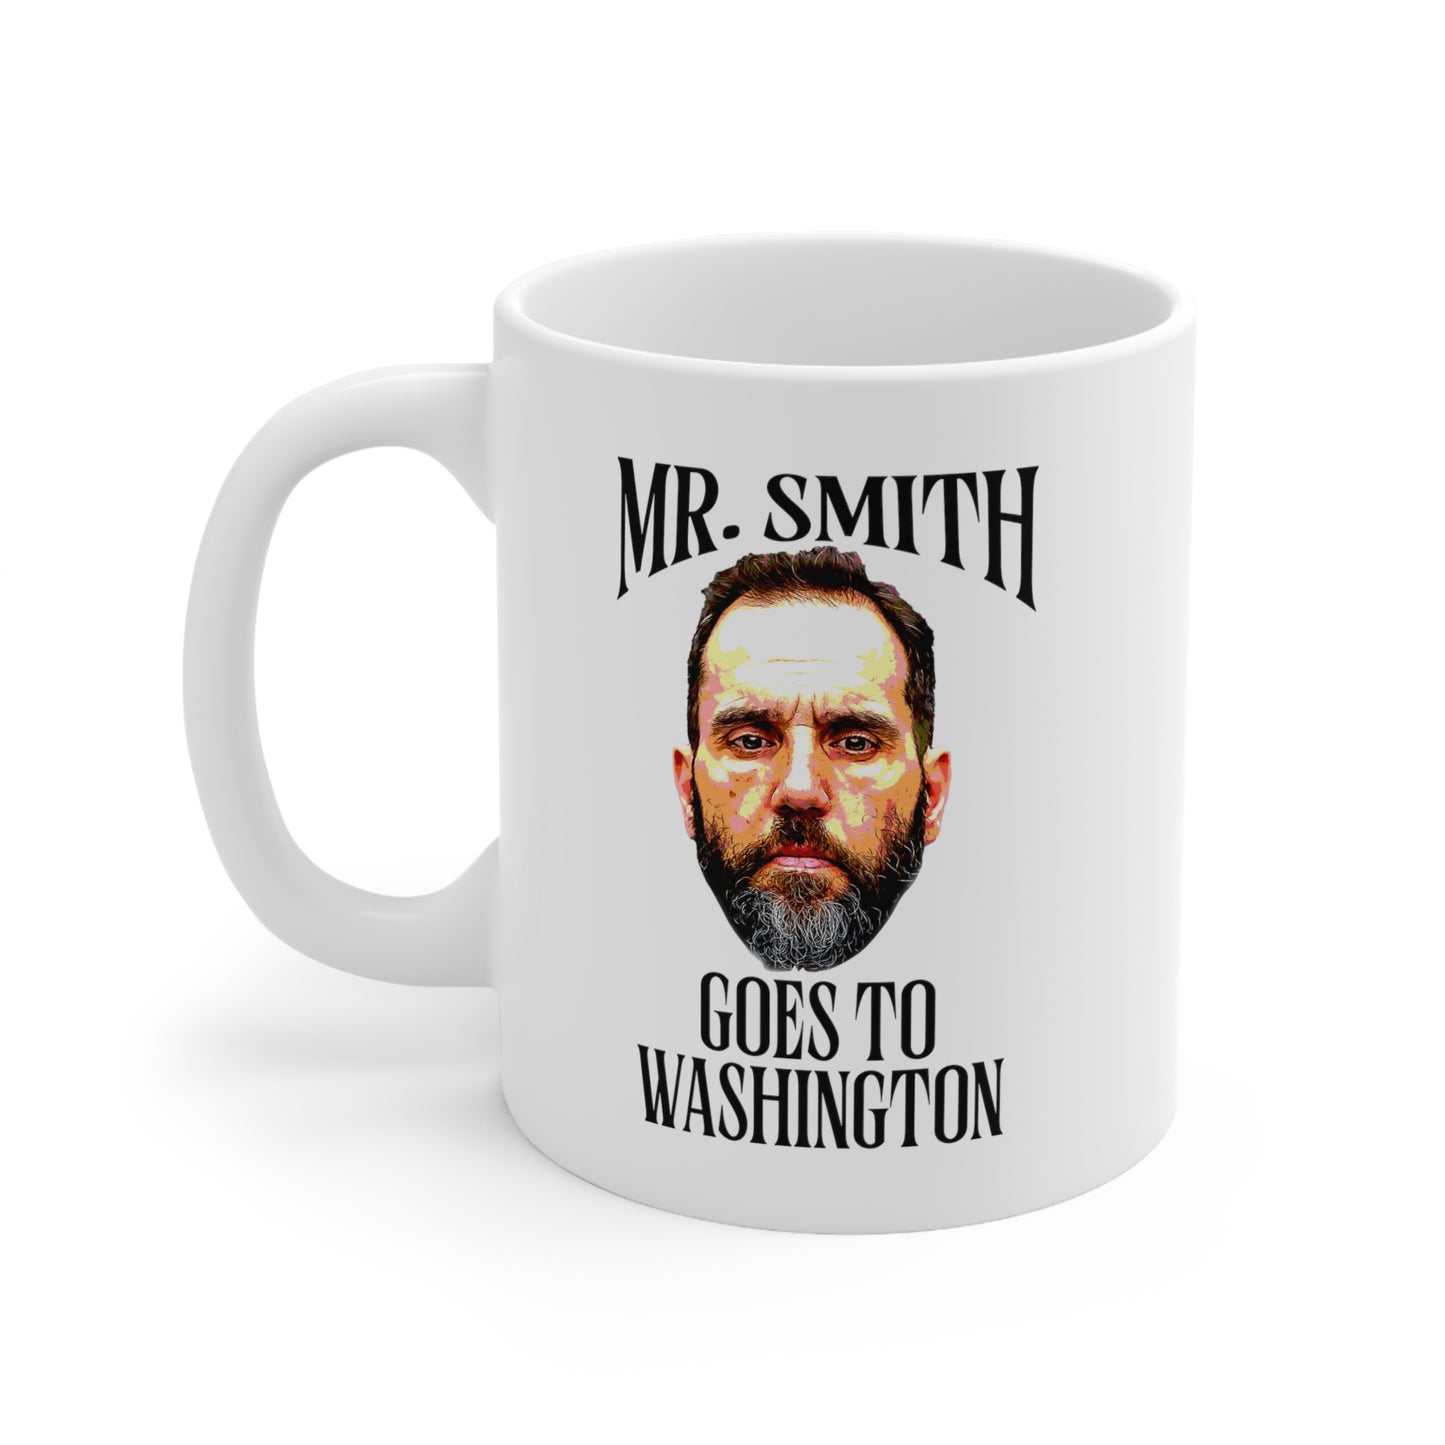 MR. SMITH GOES TO WASHINGTON Ceramic Mug